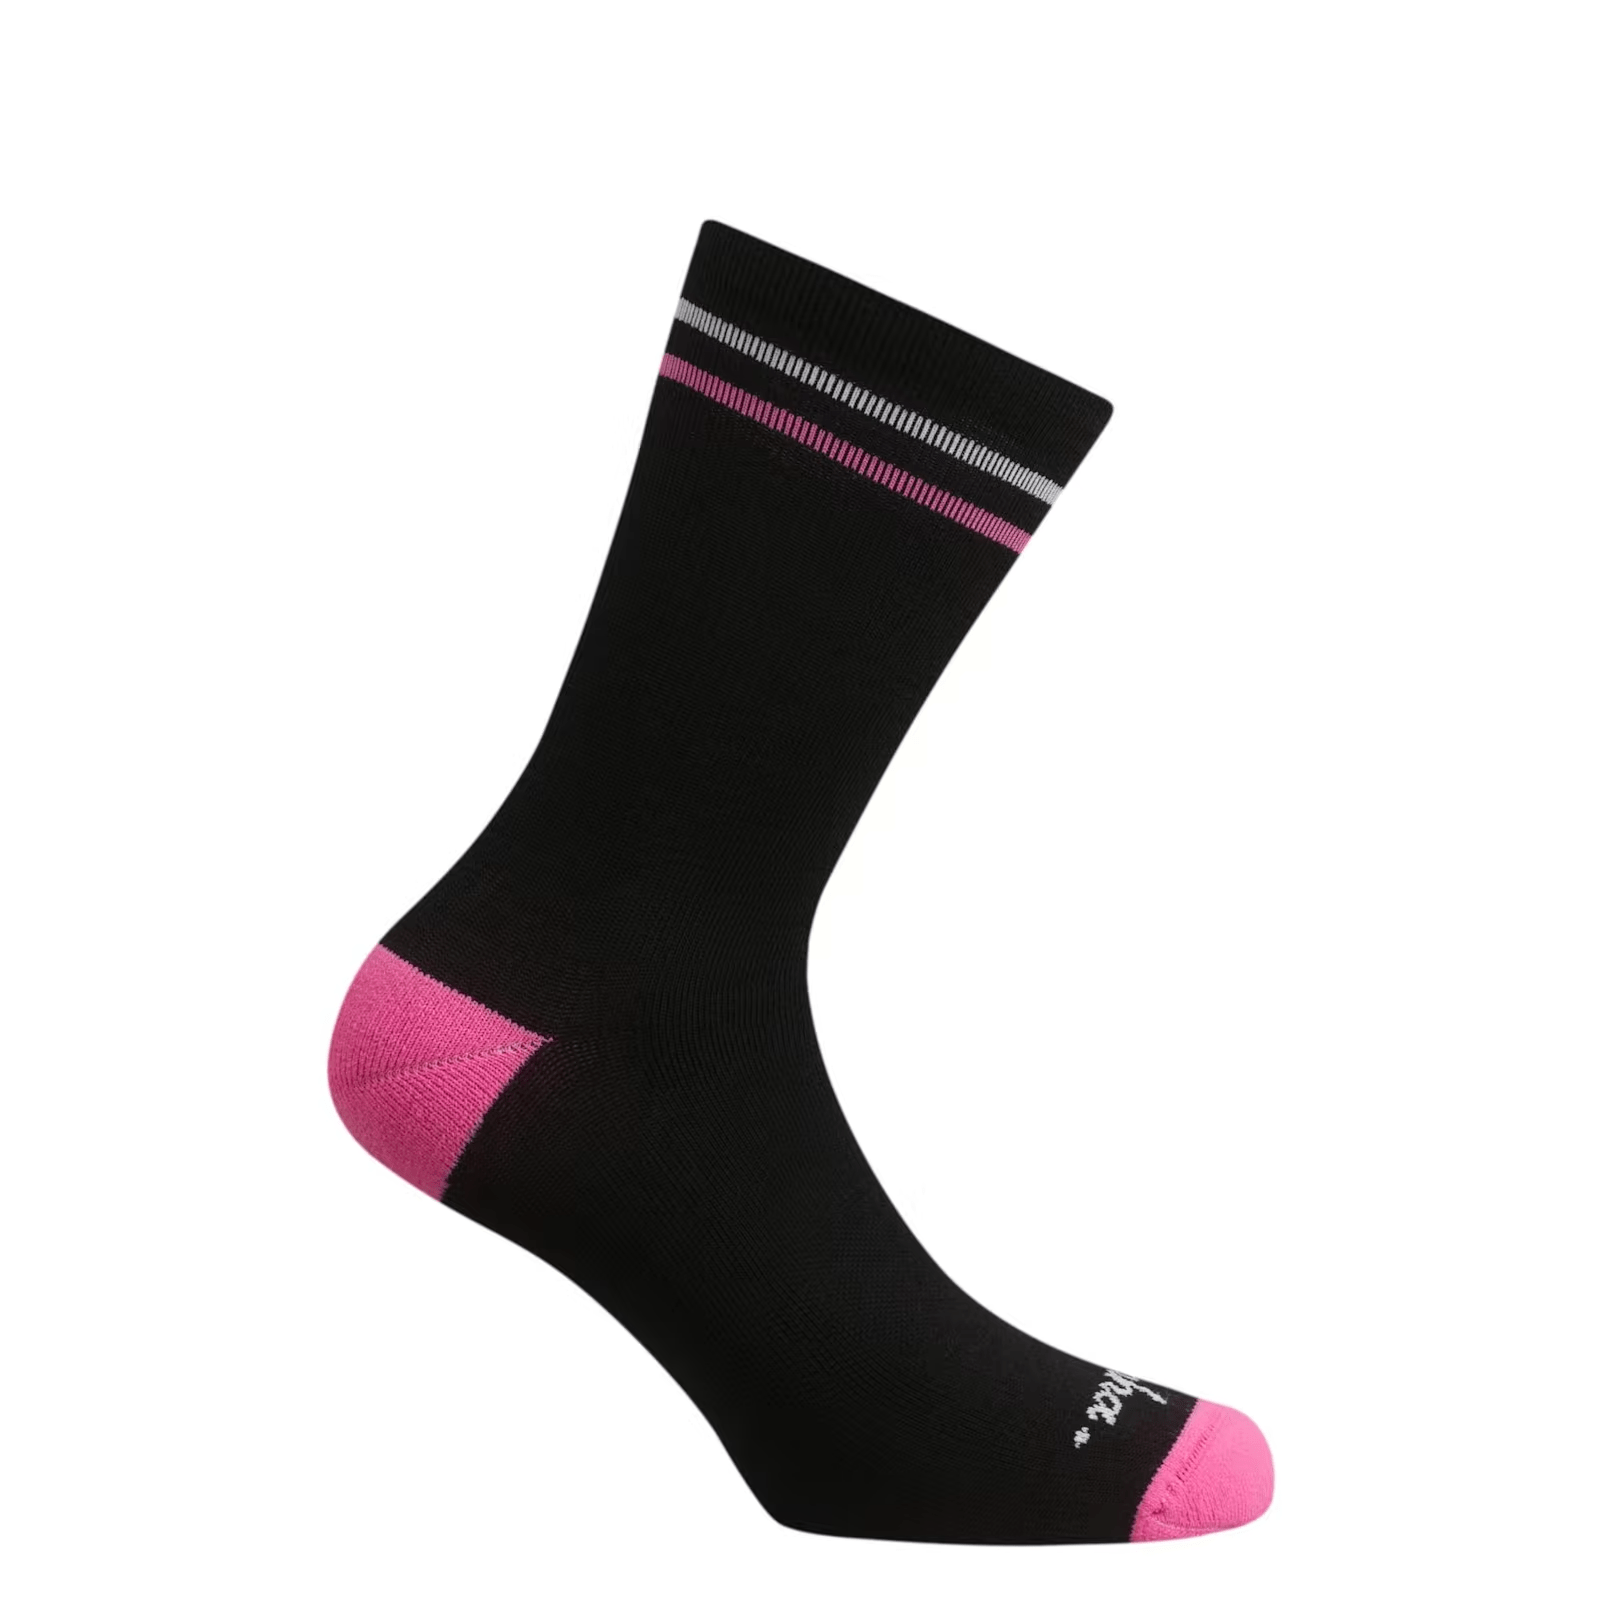 Rapha Merino Socks - Regular Black/White / S Apparel - Clothing - Socks